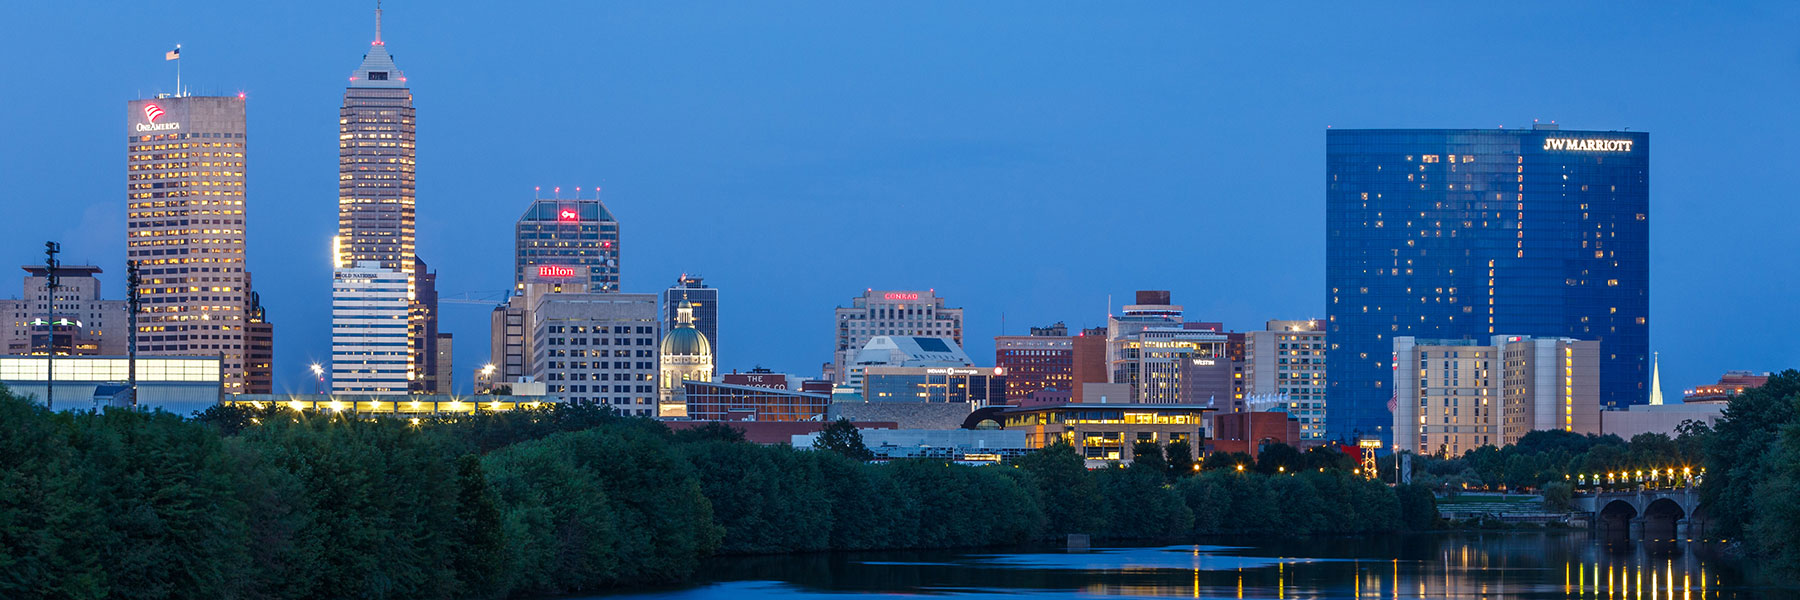 Indy city skyline at dusk